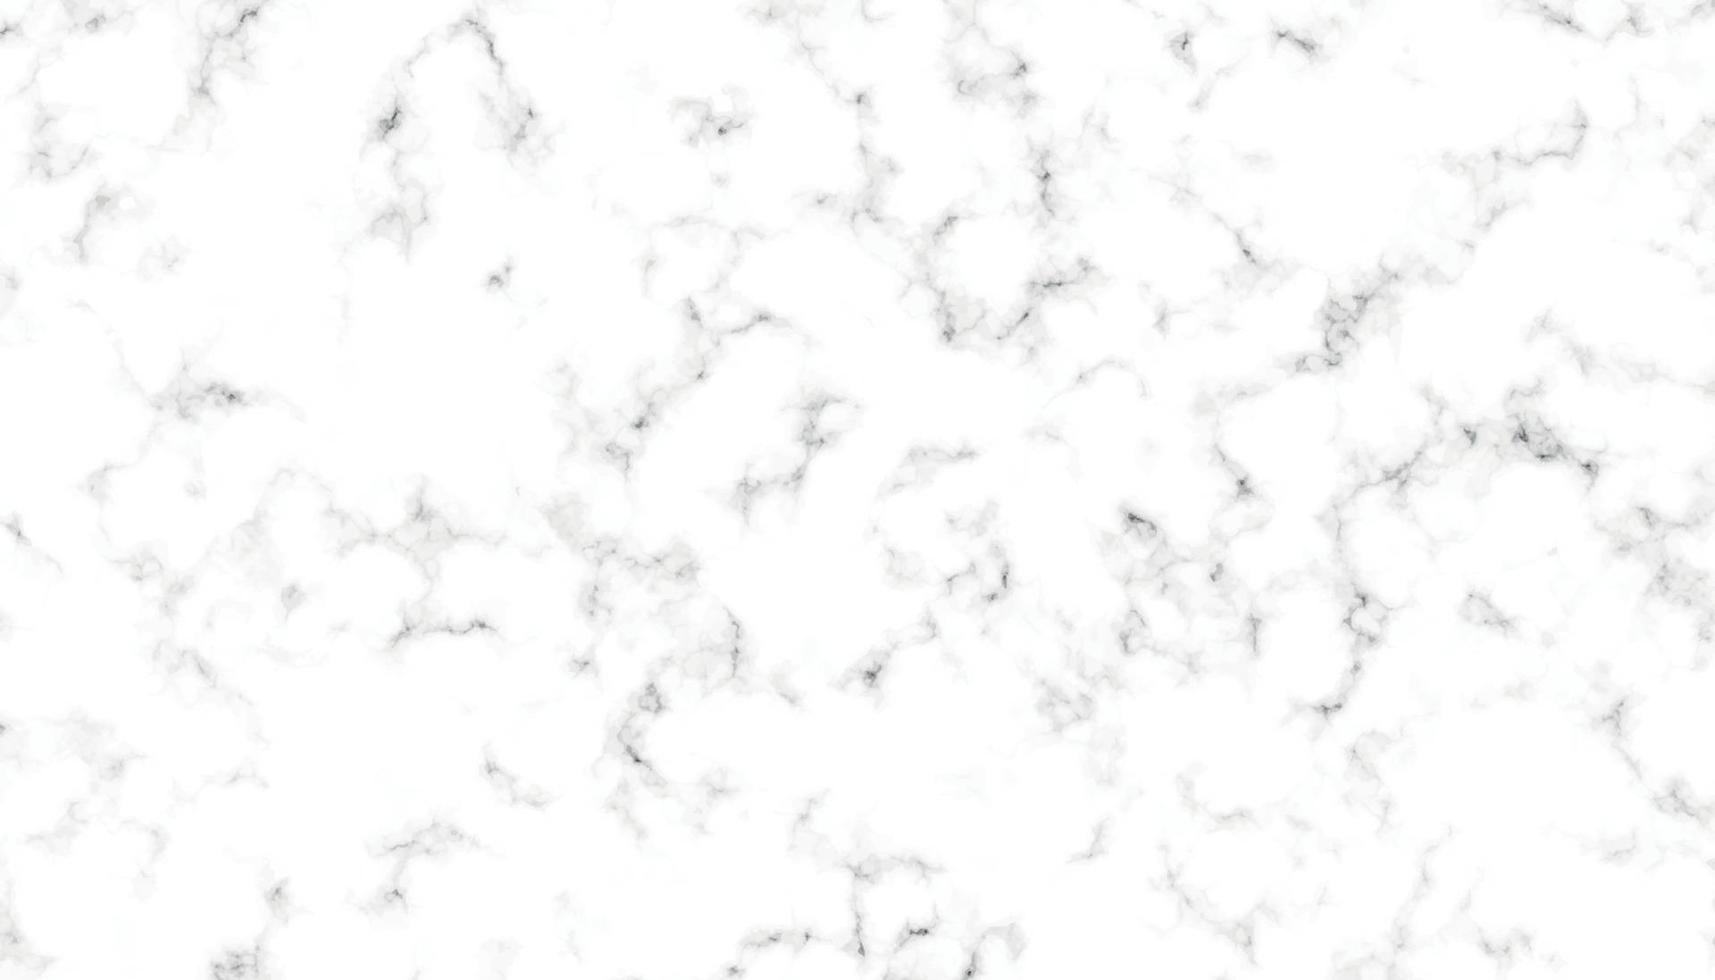 natuurlijk wit marmeren steen textuur. steen keramisch kunst muur interieurs backdrop ontwerp. naadloos patroon van tegel steen met helder en luxe. wit carrara marmeren steen textuur. vector